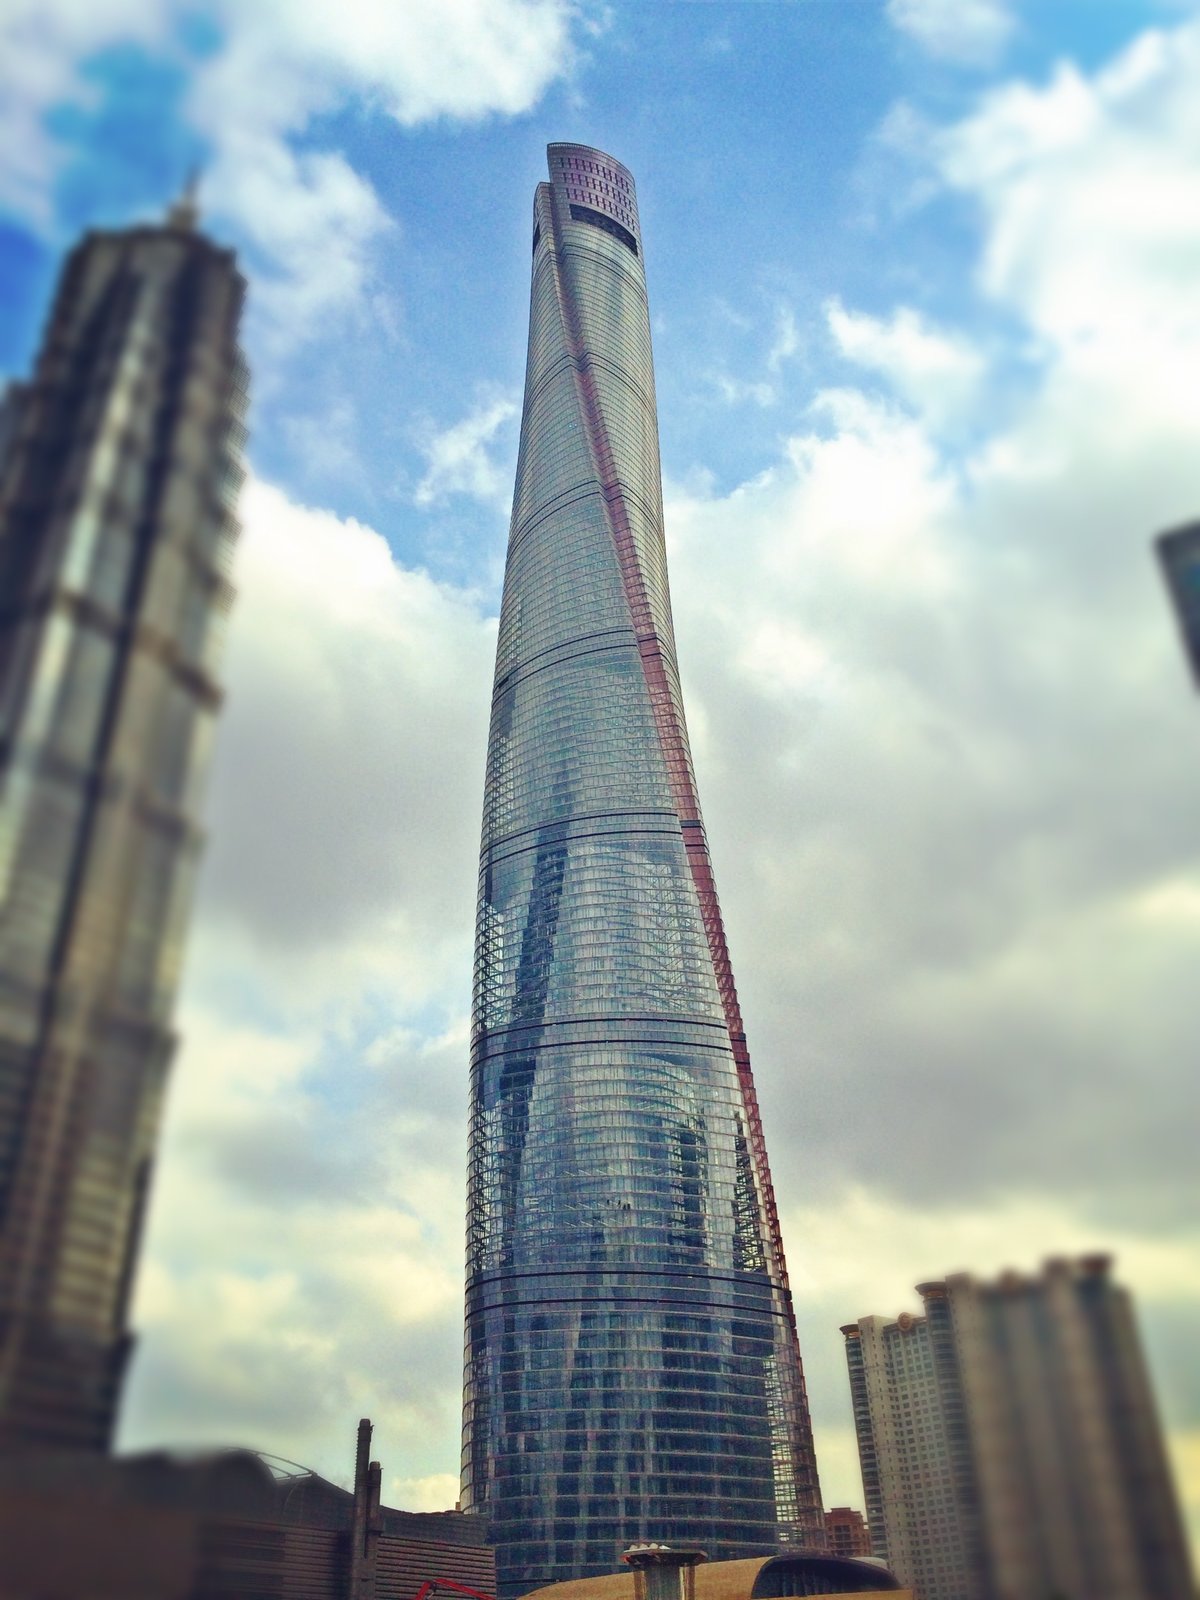 Shanghai-Tower_Wikipedia_20170705.jpg